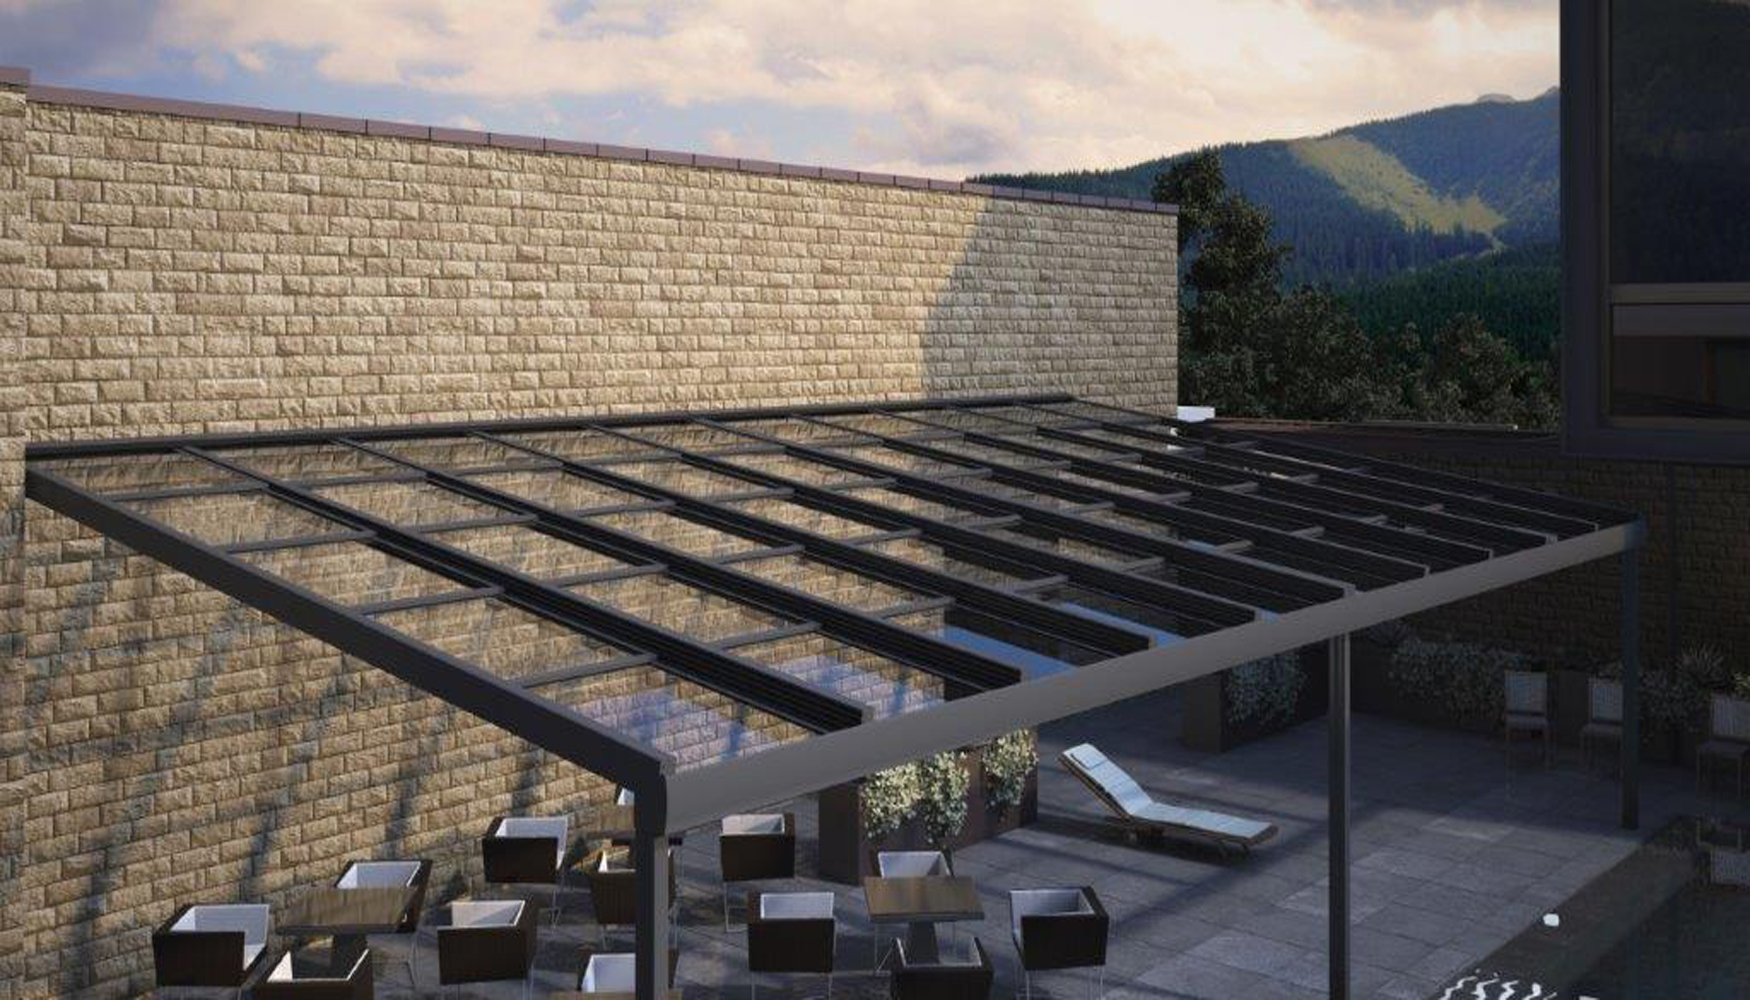 El nuevo techo de Biosttek ofrece, gracias a la estructura sin pilares intermedios, un espacio con mucha luz natural...